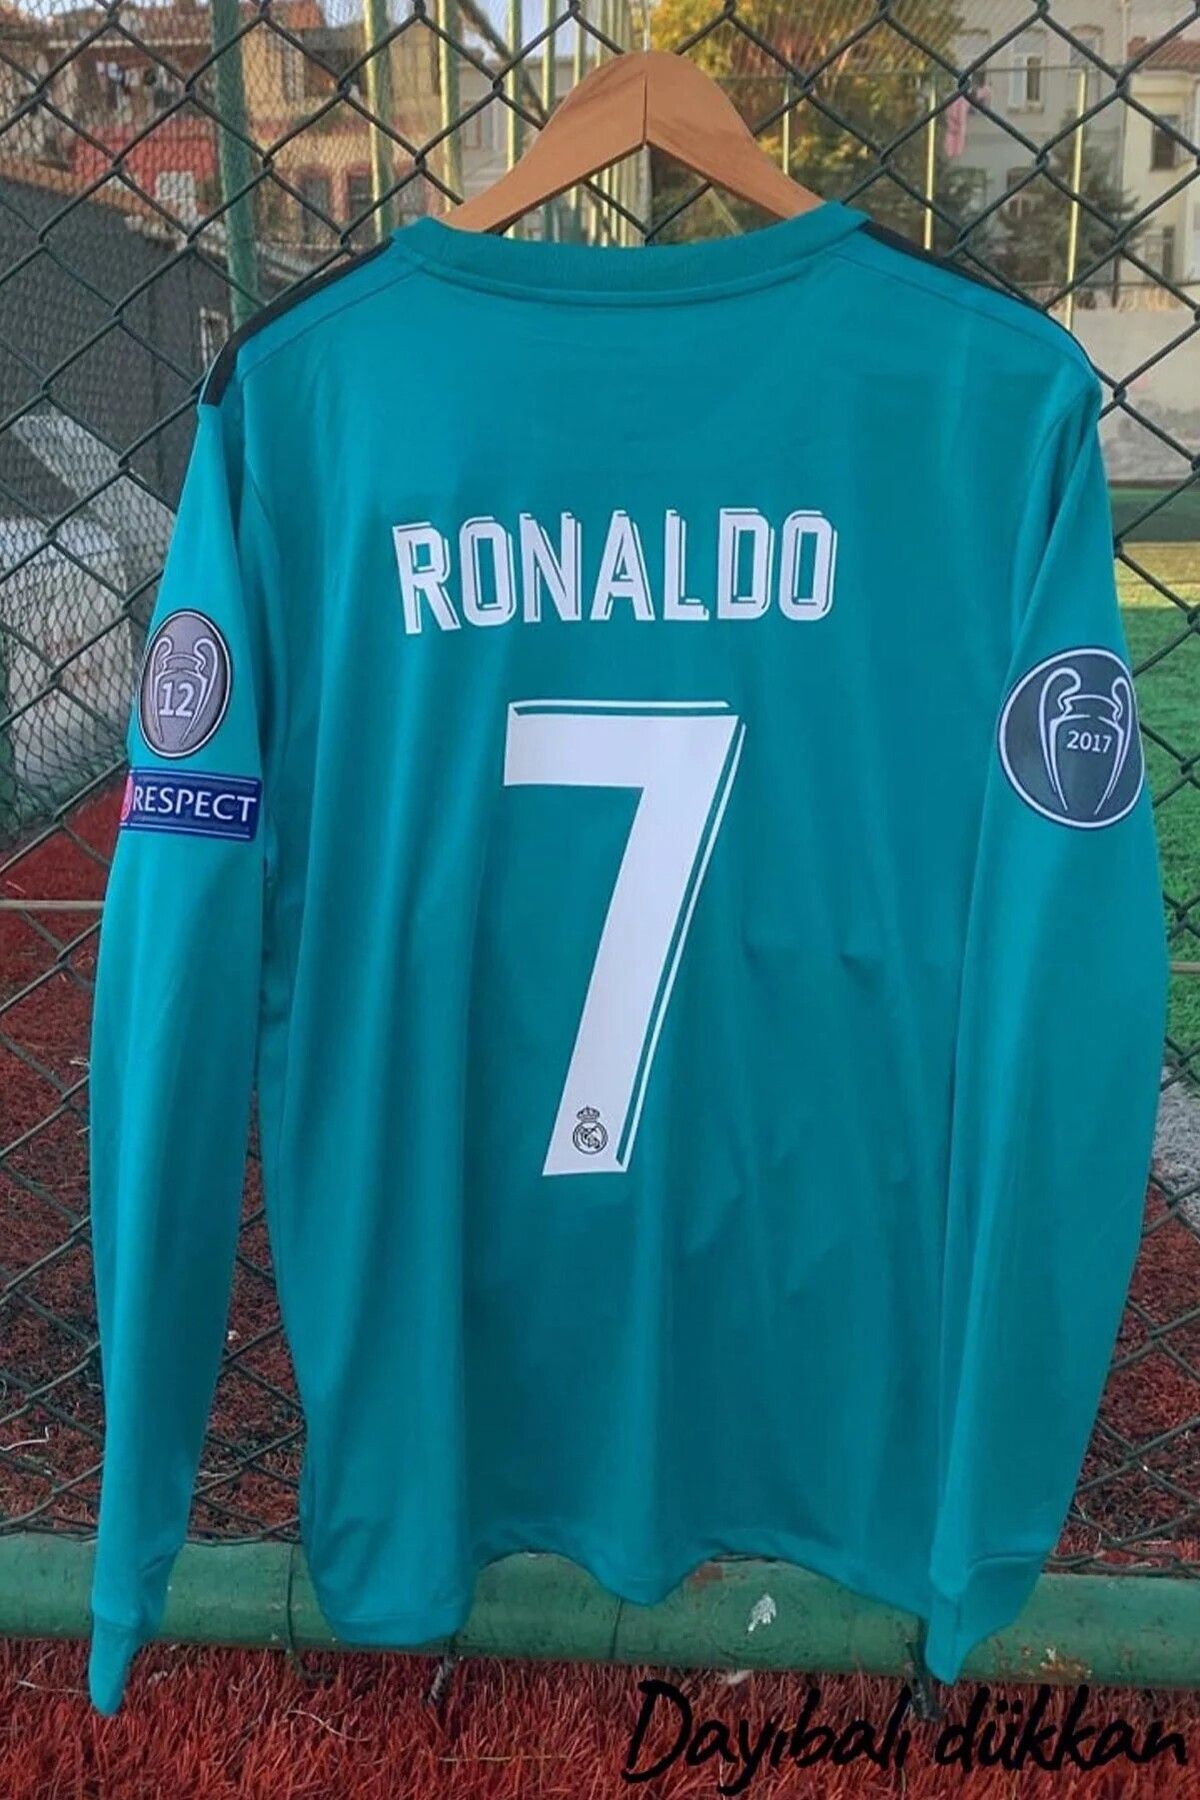 ZİLONG Real Madrid Ronaldo 2017/18 Yeşili-turkuaz Uzun Kol Şampiyonlar Ligi Deplasman Forması